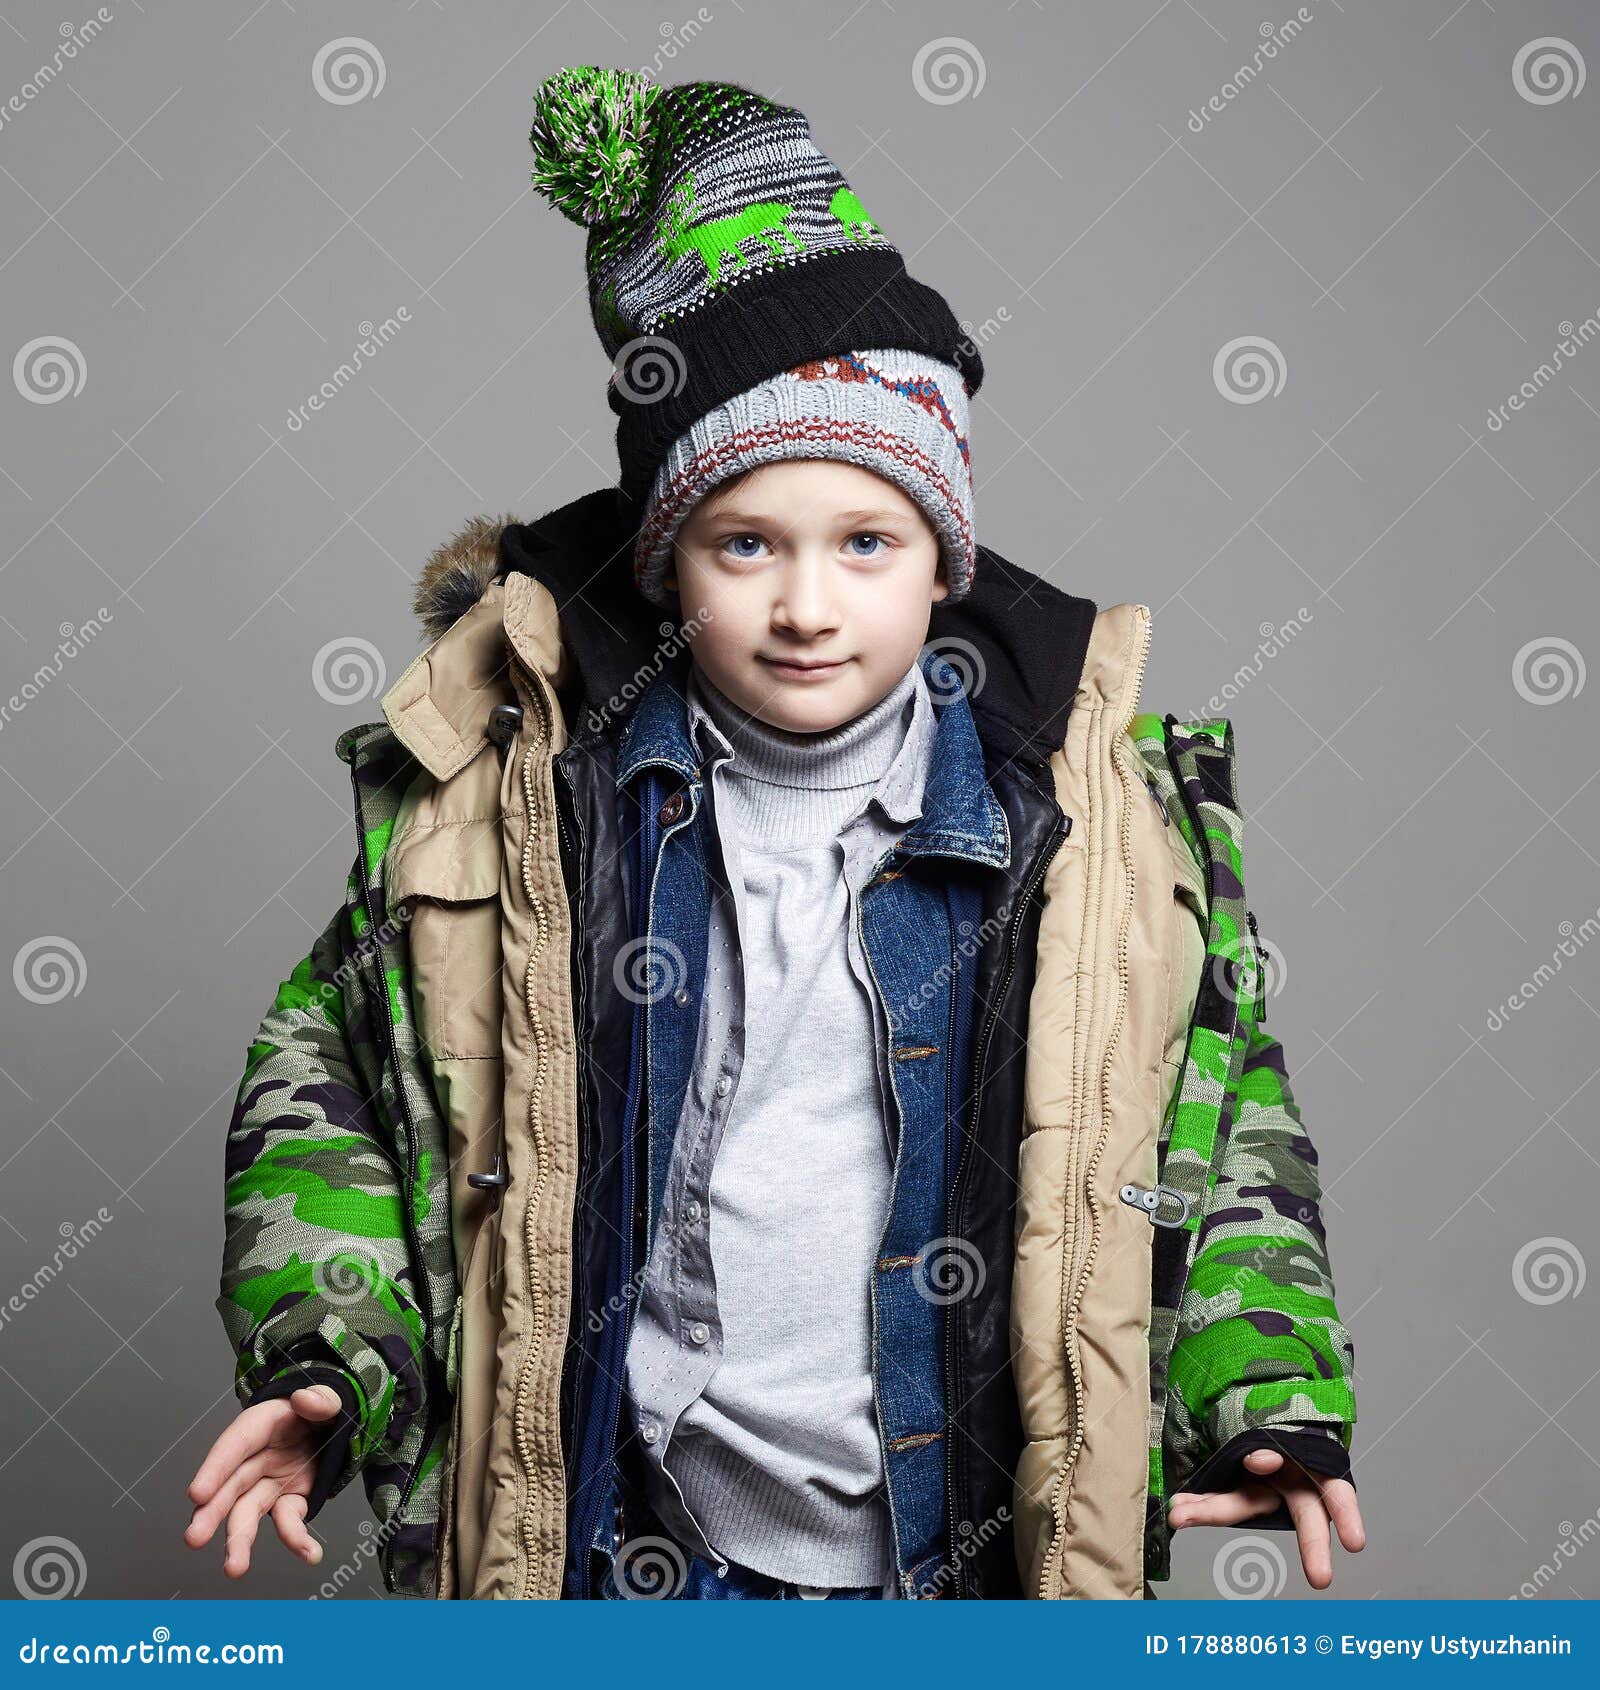 5 μπουφάν είναι ντυμένα στο παιδί. αστείο αγόρι με χειμερινά εξωτερικά ρούχα  Στοκ Εικόνα - εικόνα από childhood: 178880613